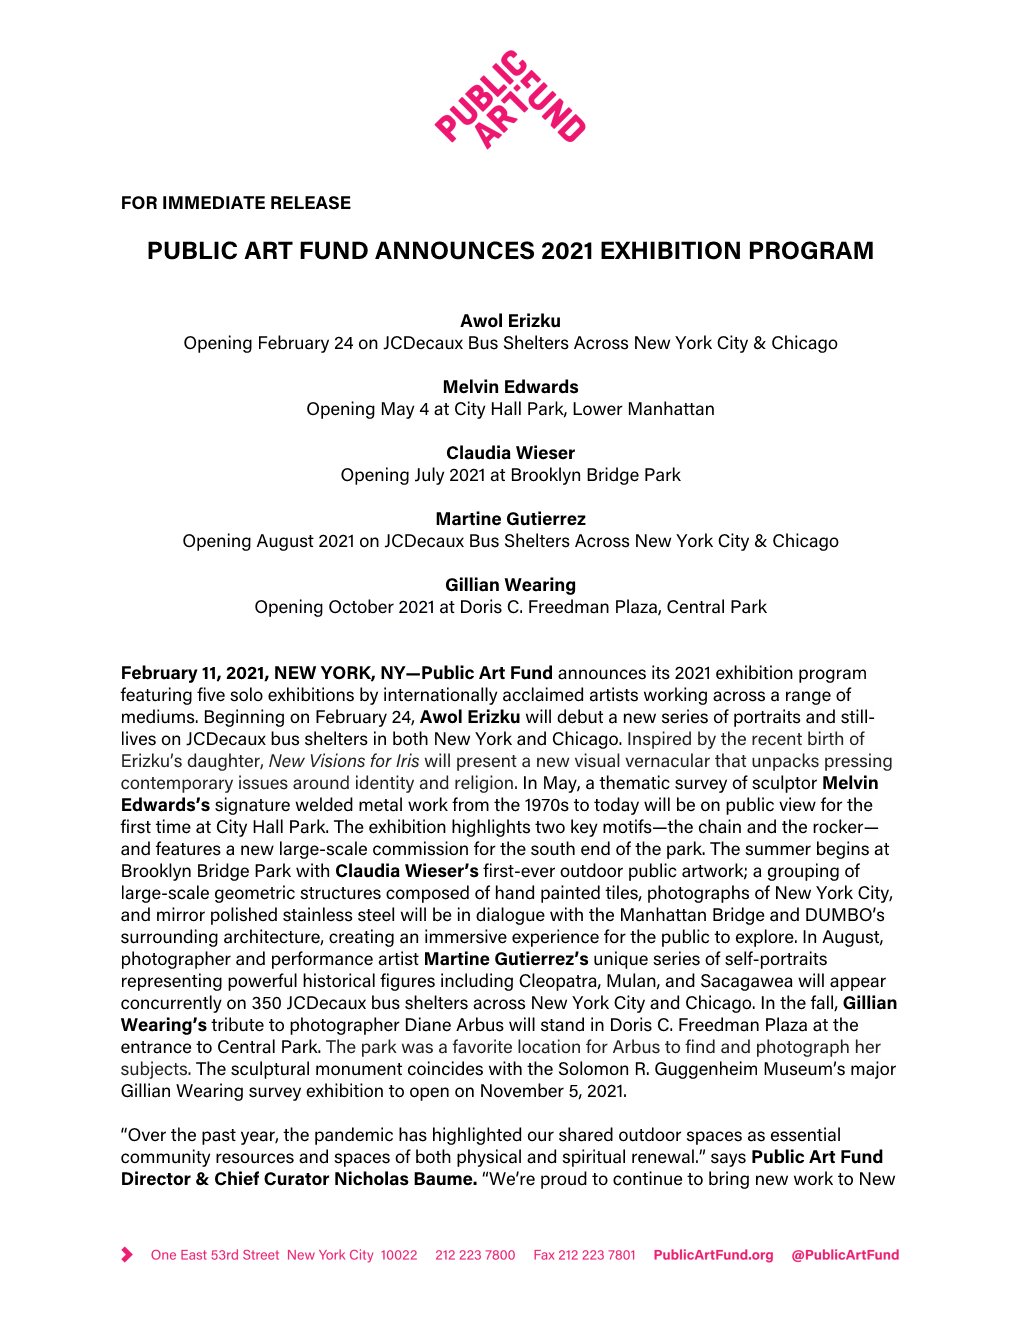 Public Art Fund Announces 2021 Exhibition Program